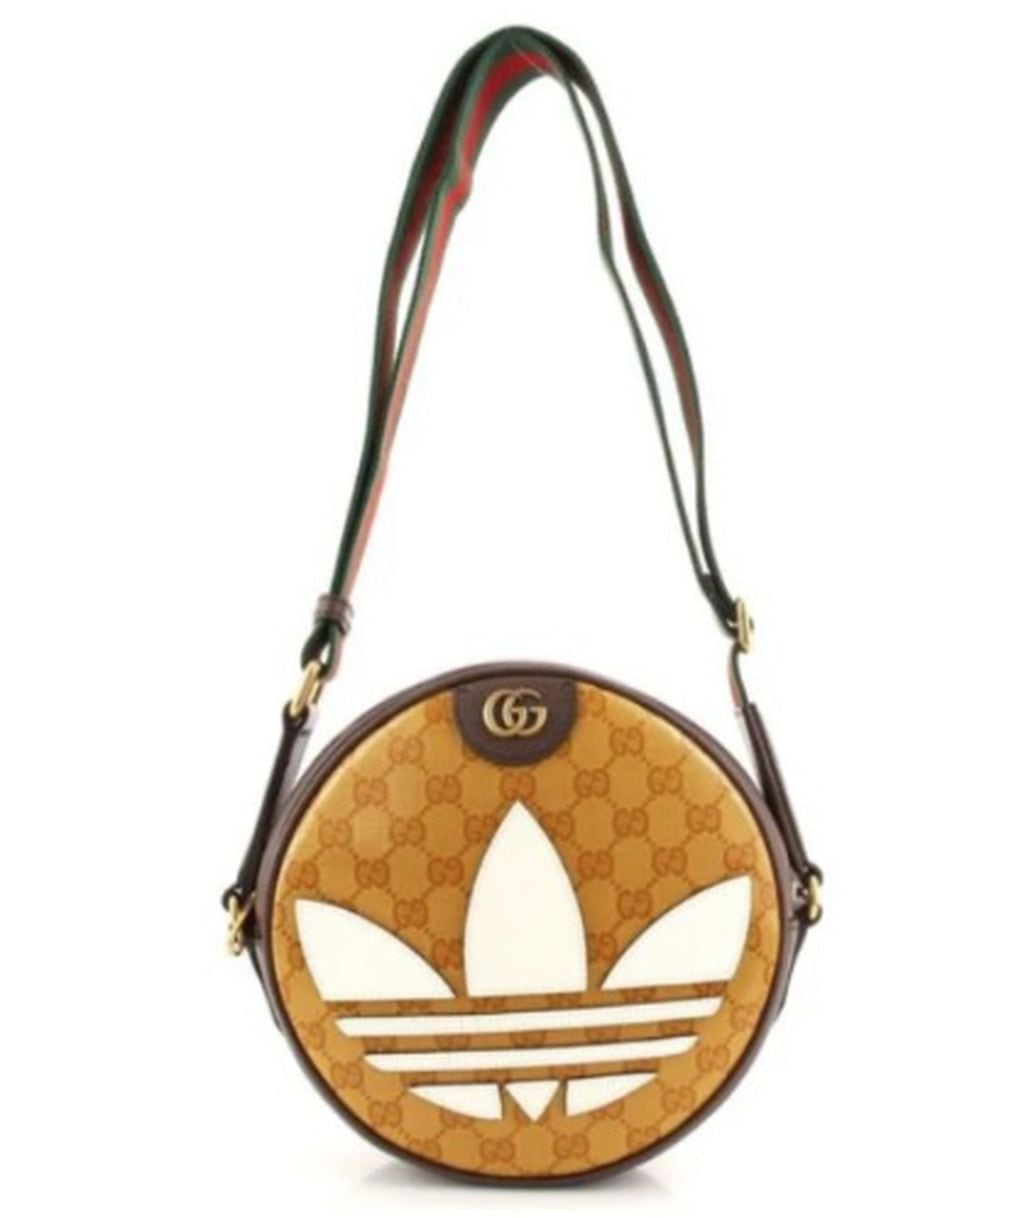 La bandolera Gucci by Adidas cuesta 2.700 dólares.